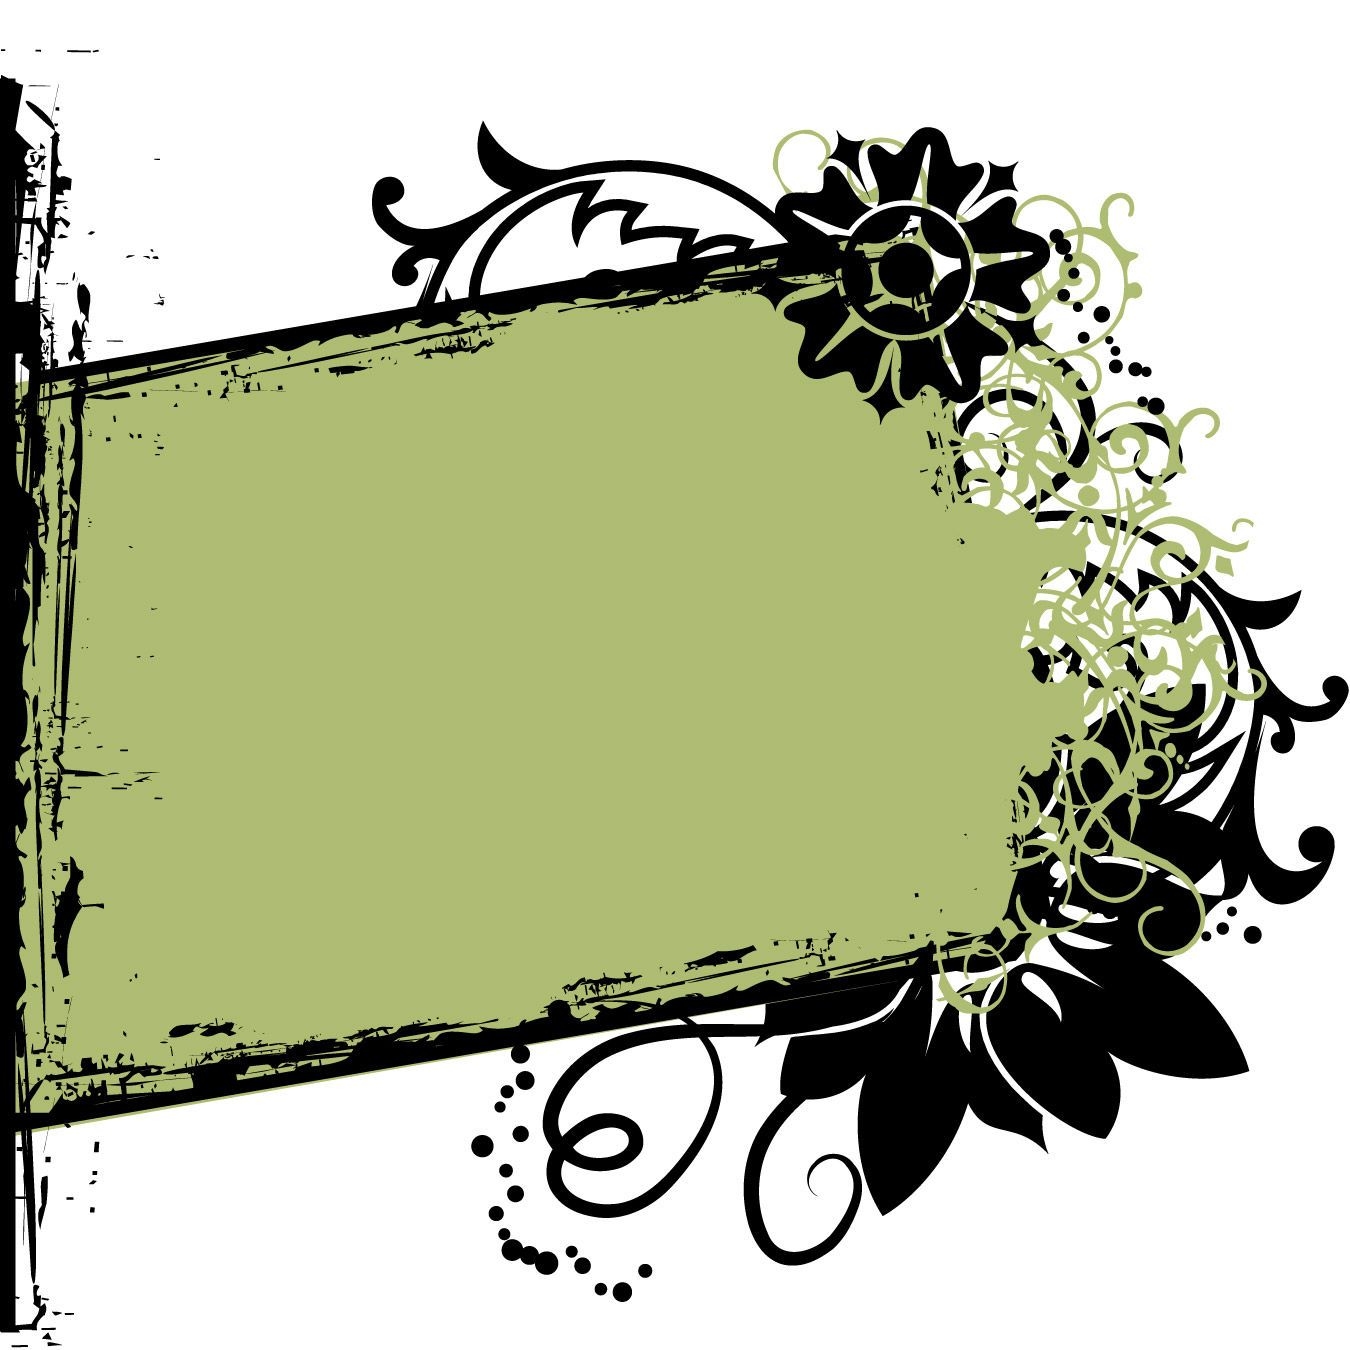 Download Torn Rectangle Floral Grunge Frame - Vector download